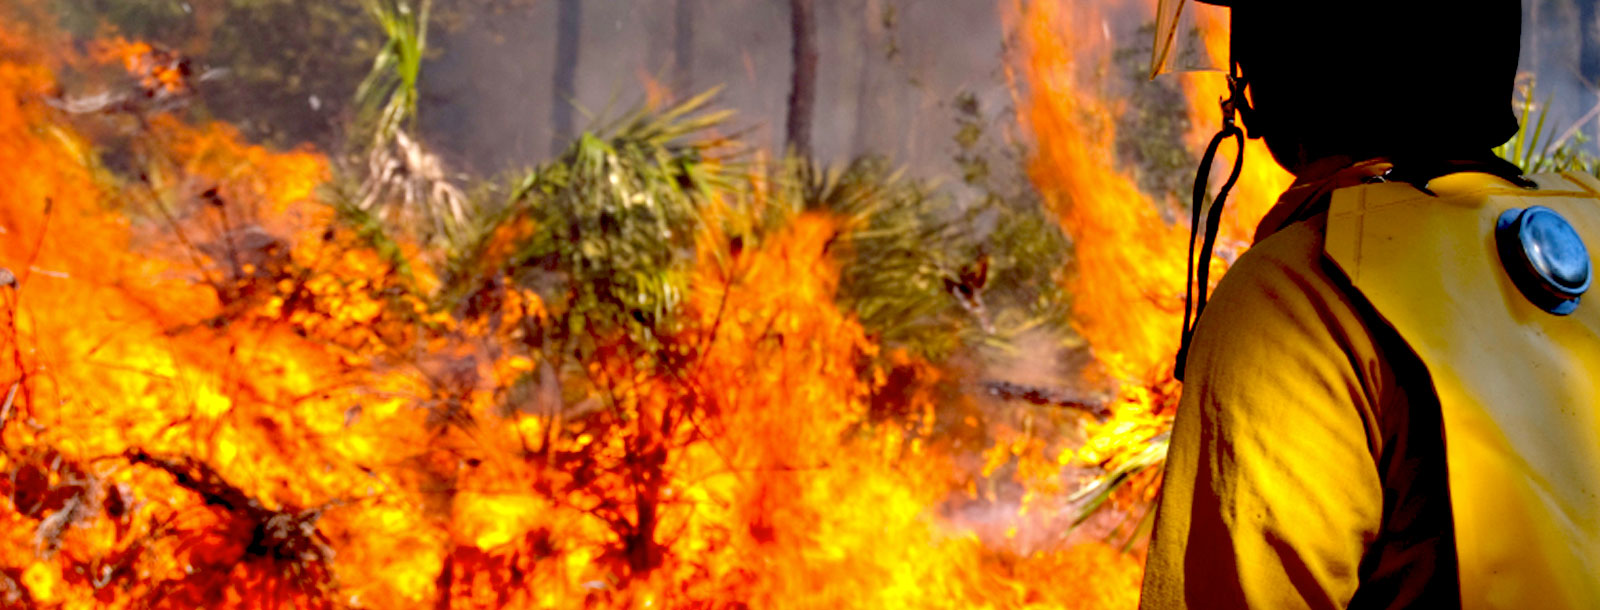 Puro Pellet: Prevención máxima, la clave para evitar los incendios forestales